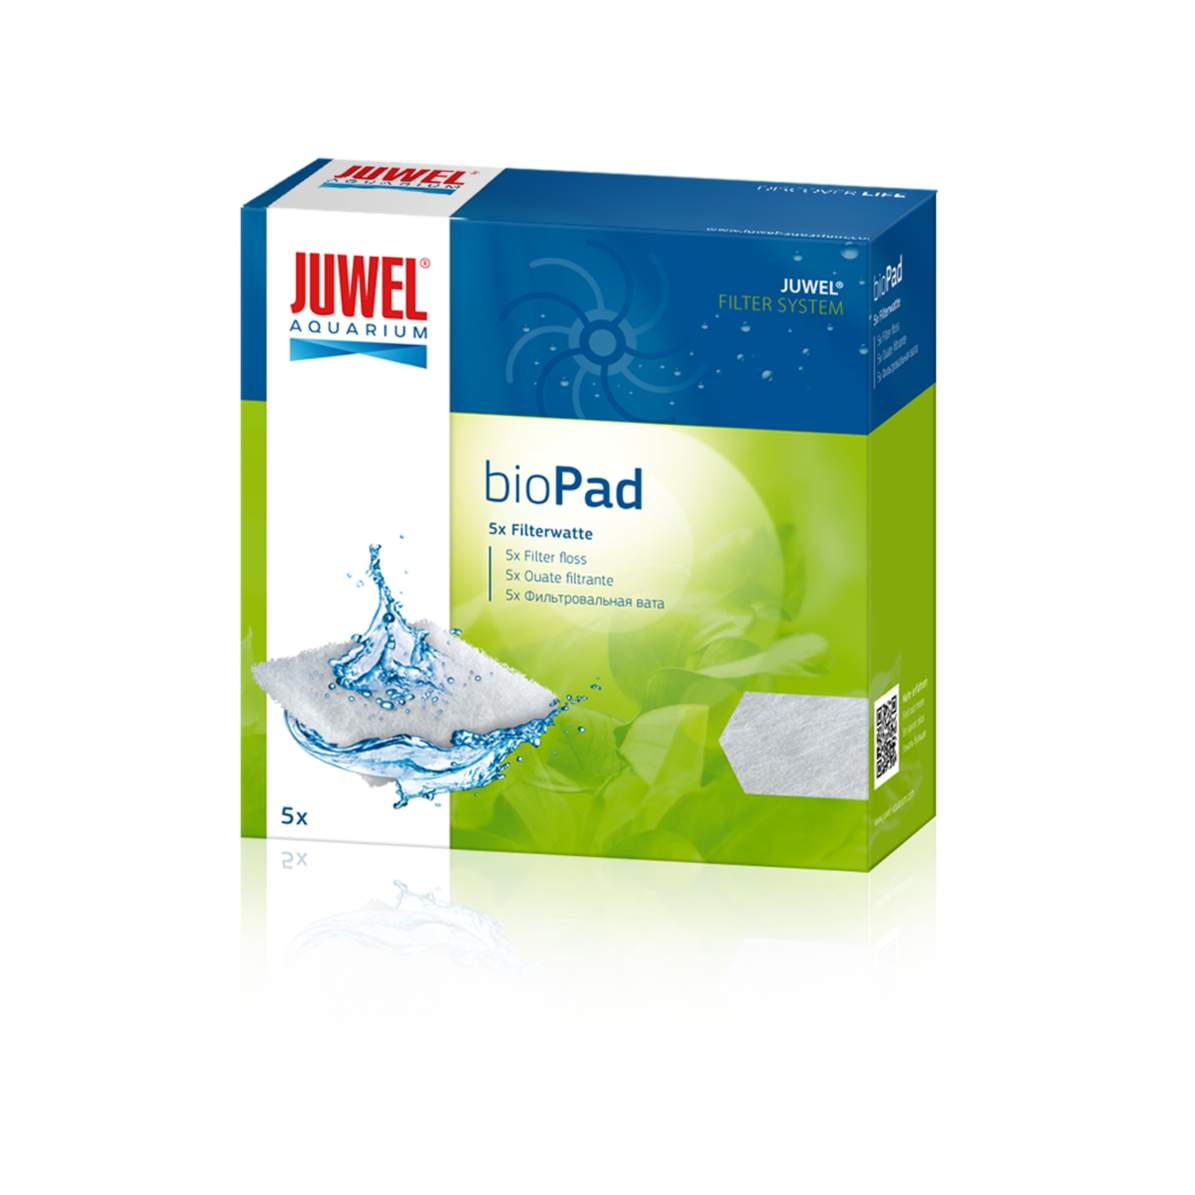 Juwel BioPad XL